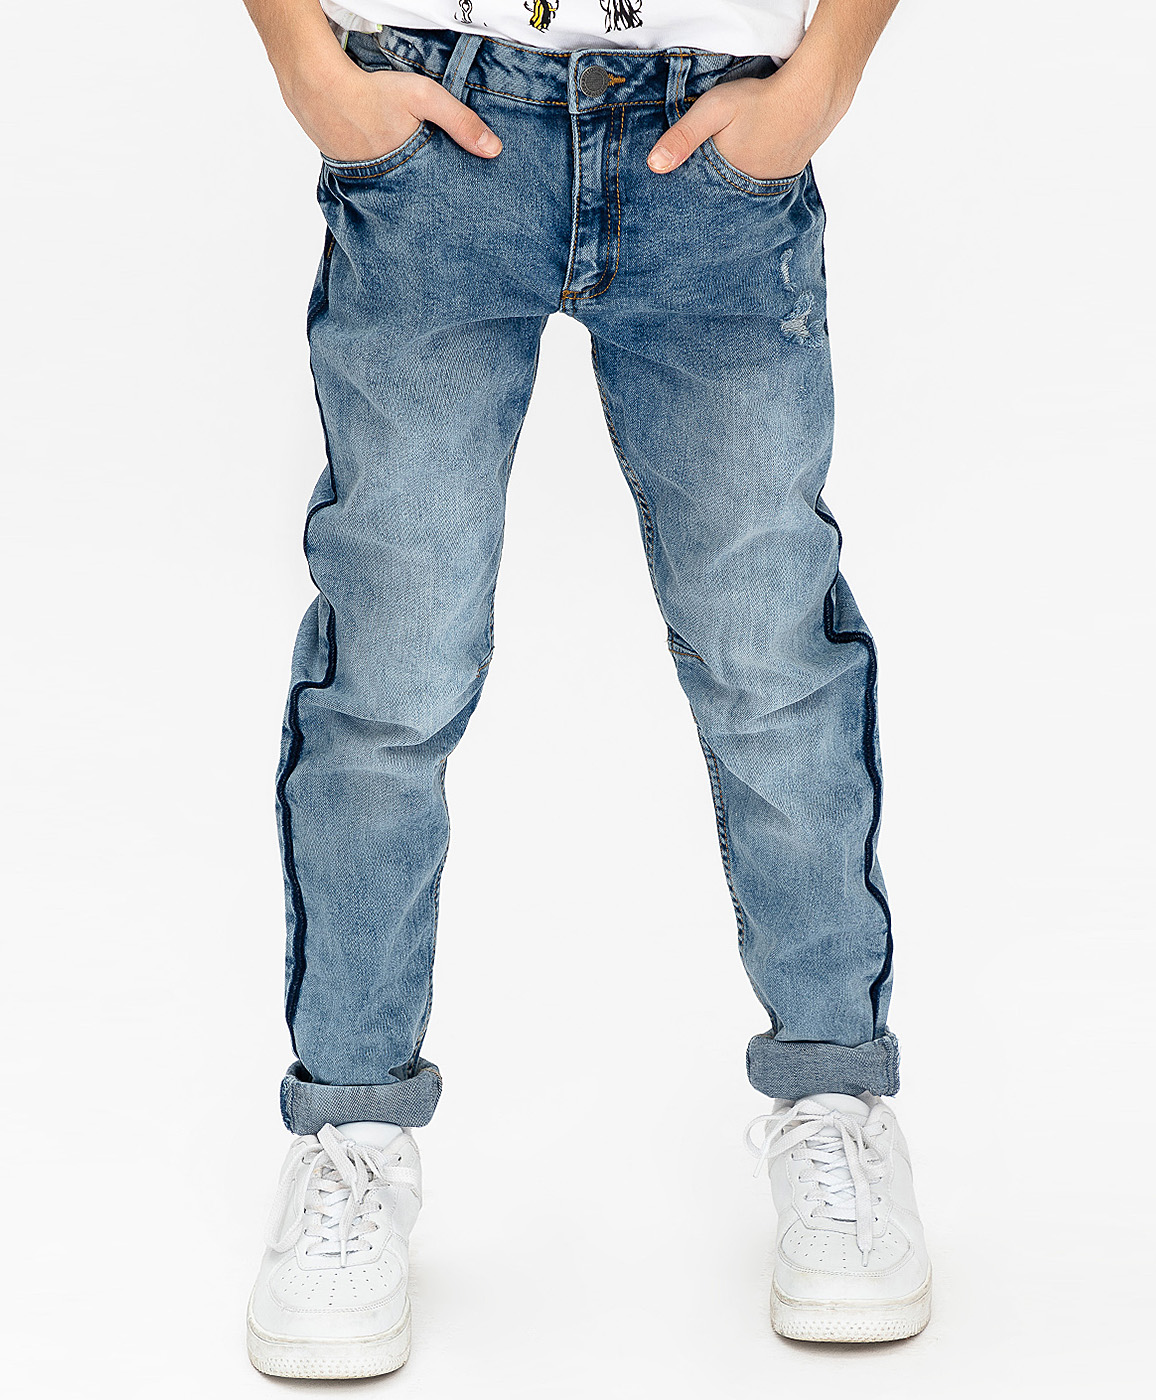 Стильные джинсы на мальчика